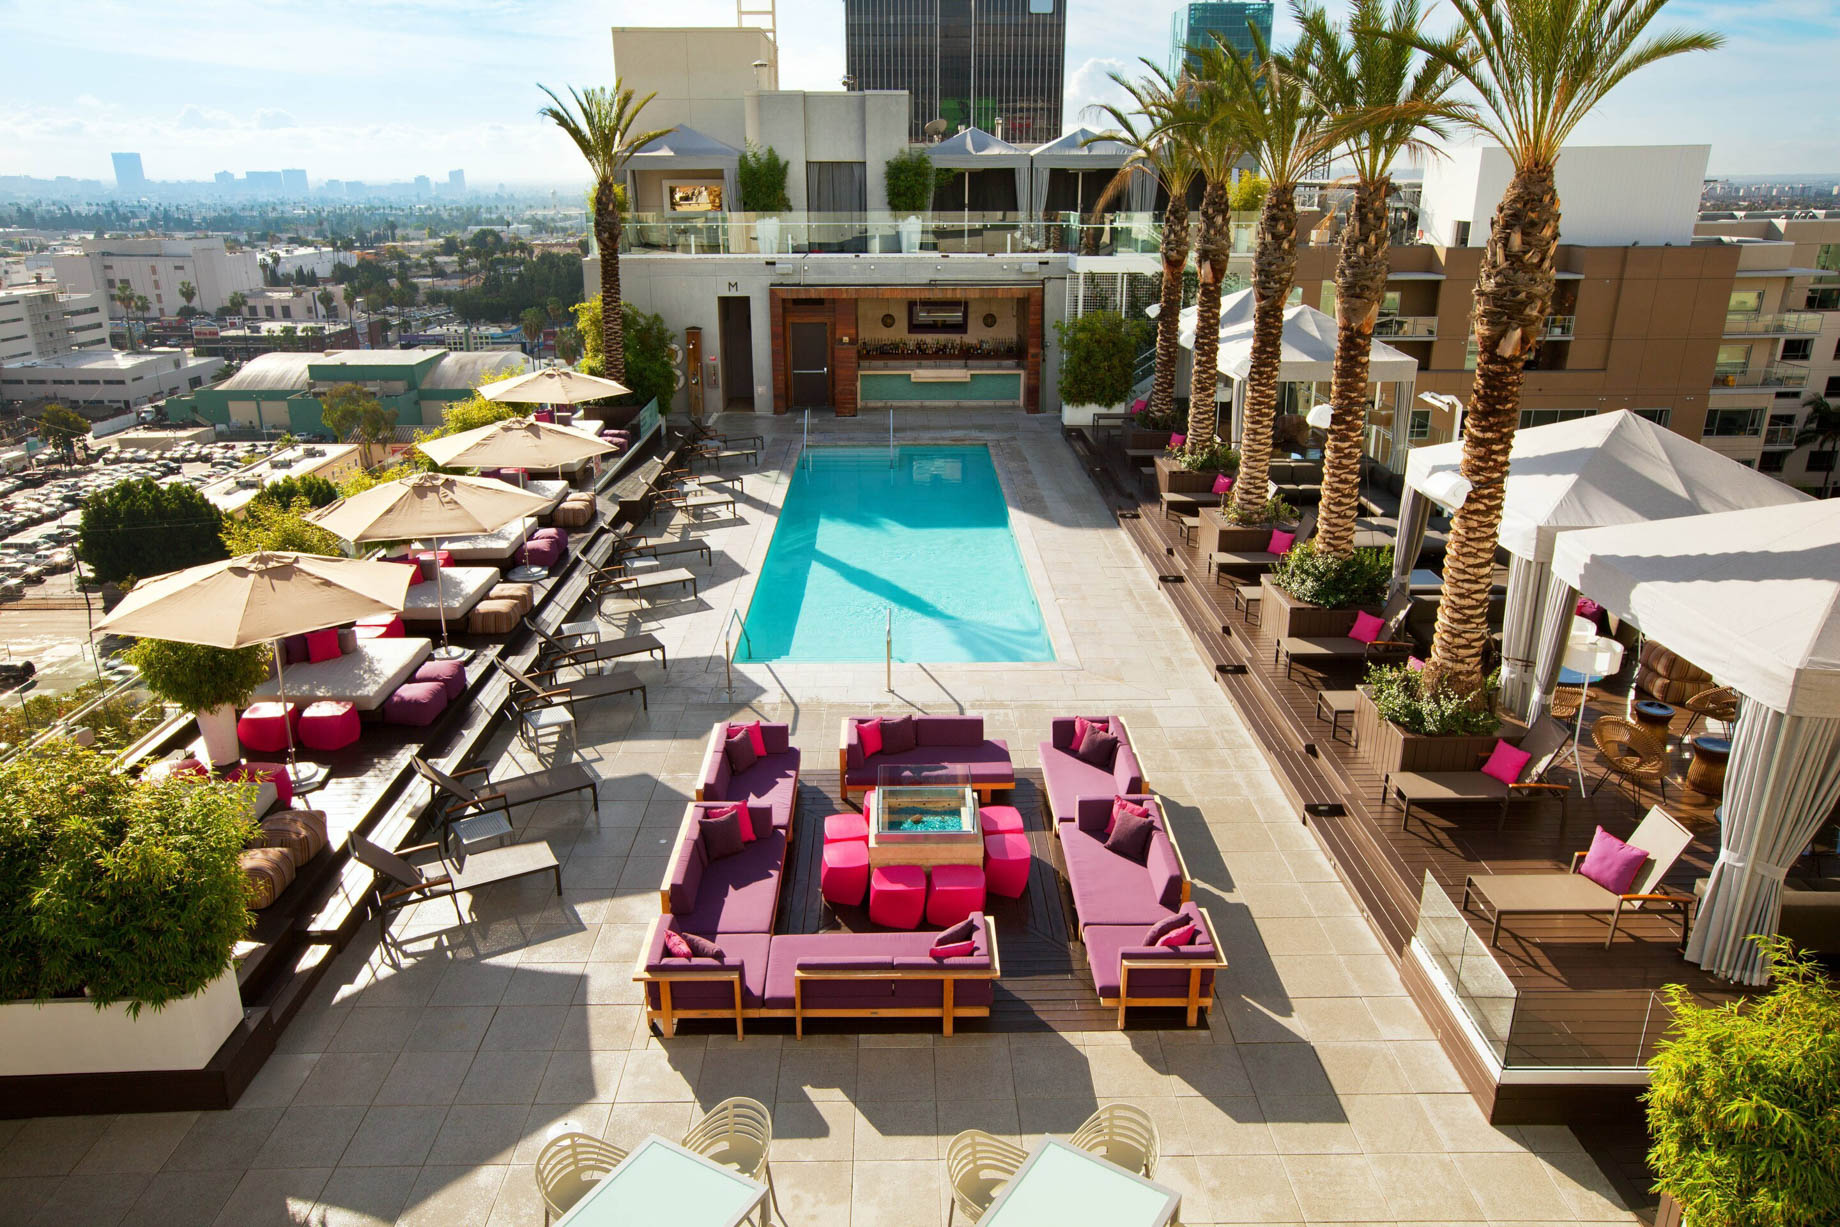 W Hollywood Hotel - Hollywood, CA, USA - WET Deck